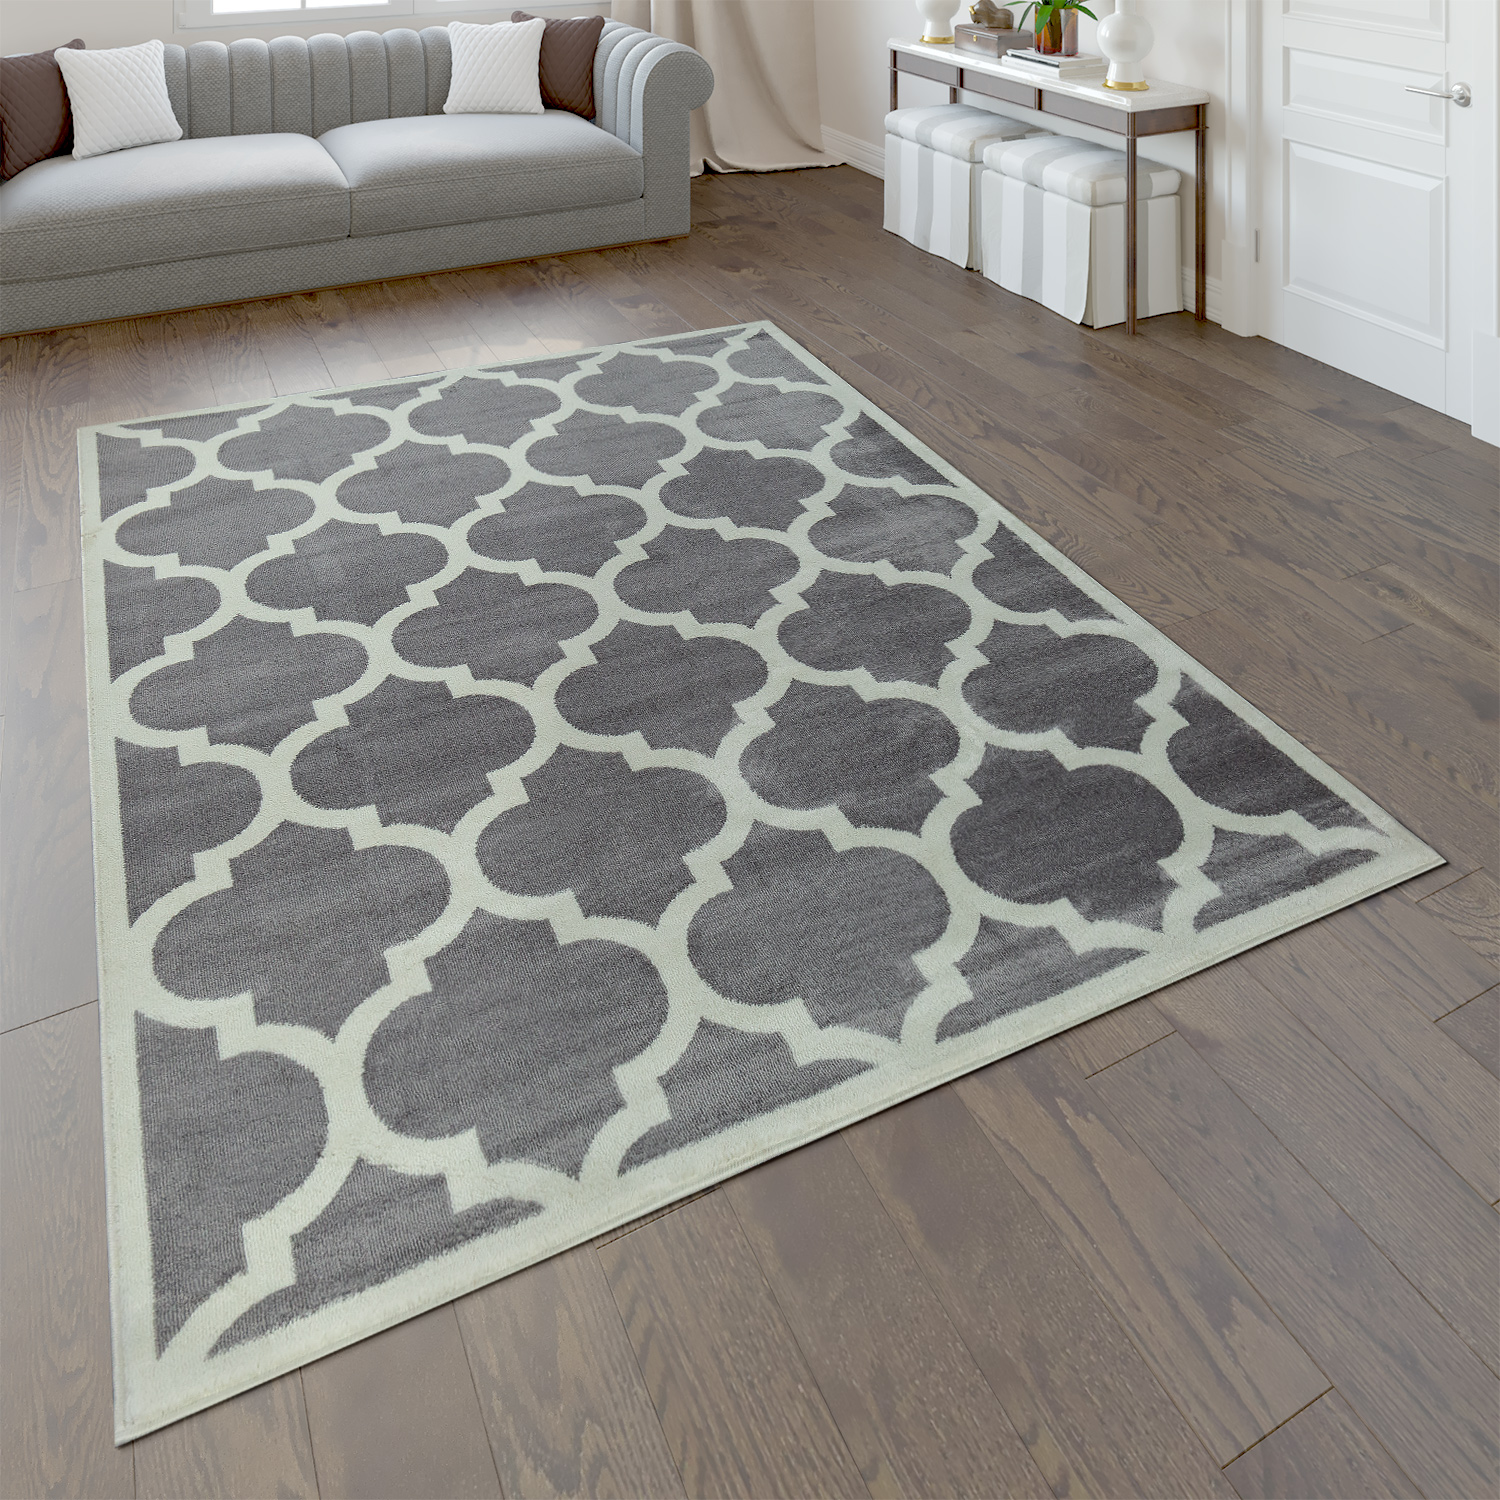 Teppich Marokkanisches Muster Ornamente Muster Teppiche Braun Beige 200x290cm 